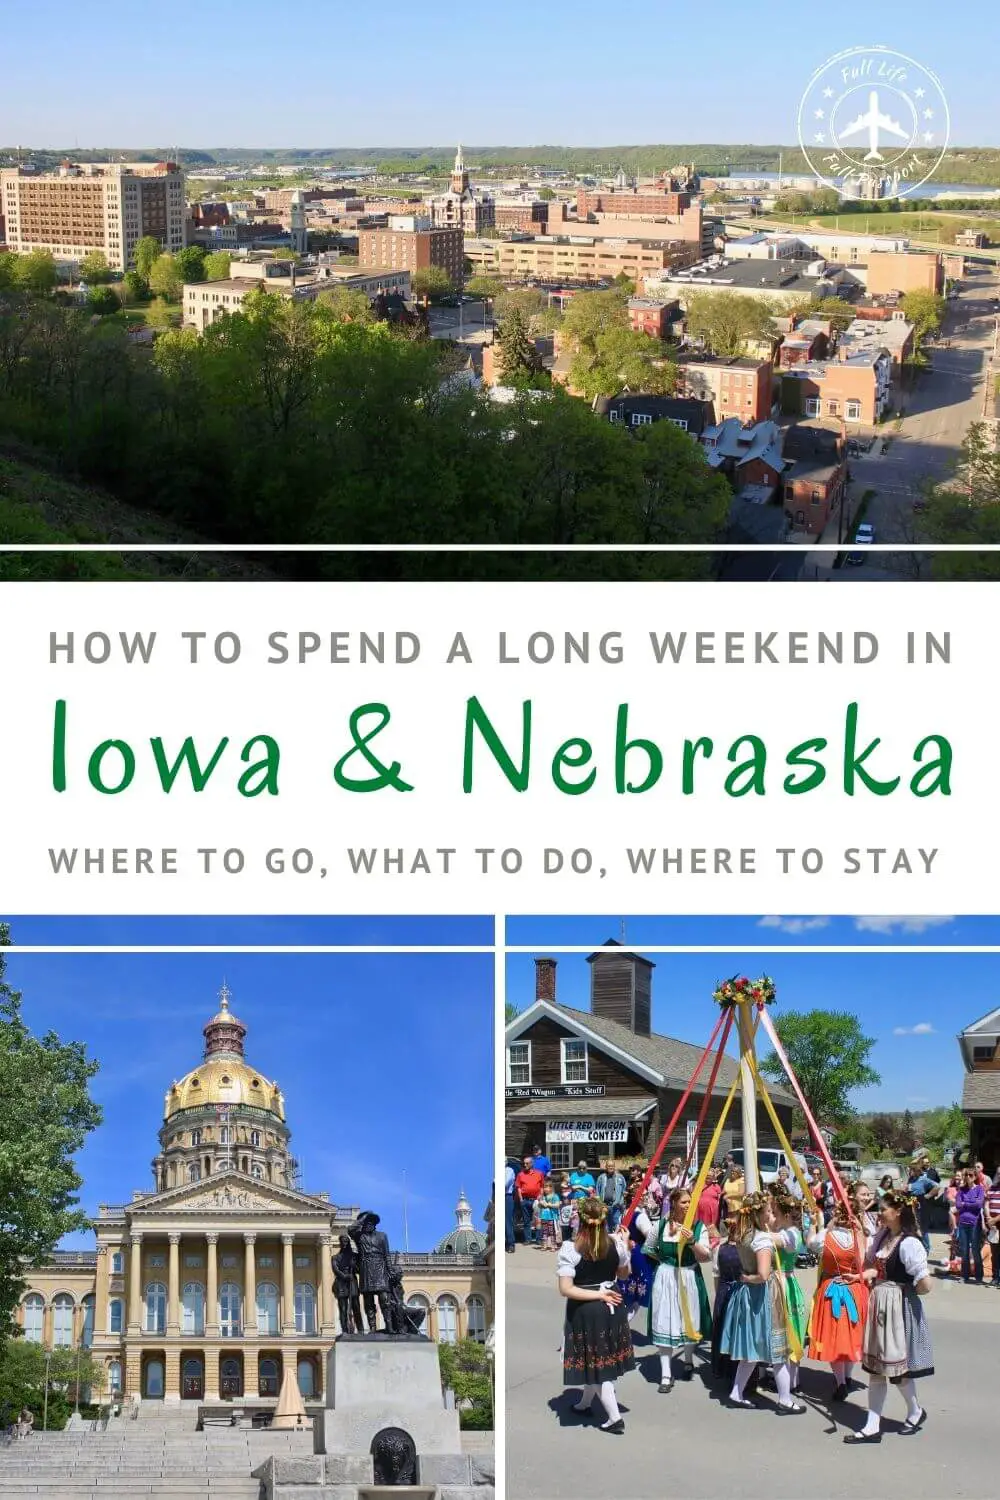 Midwestern Delights: A Long Weekend in Iowa and Nebraska